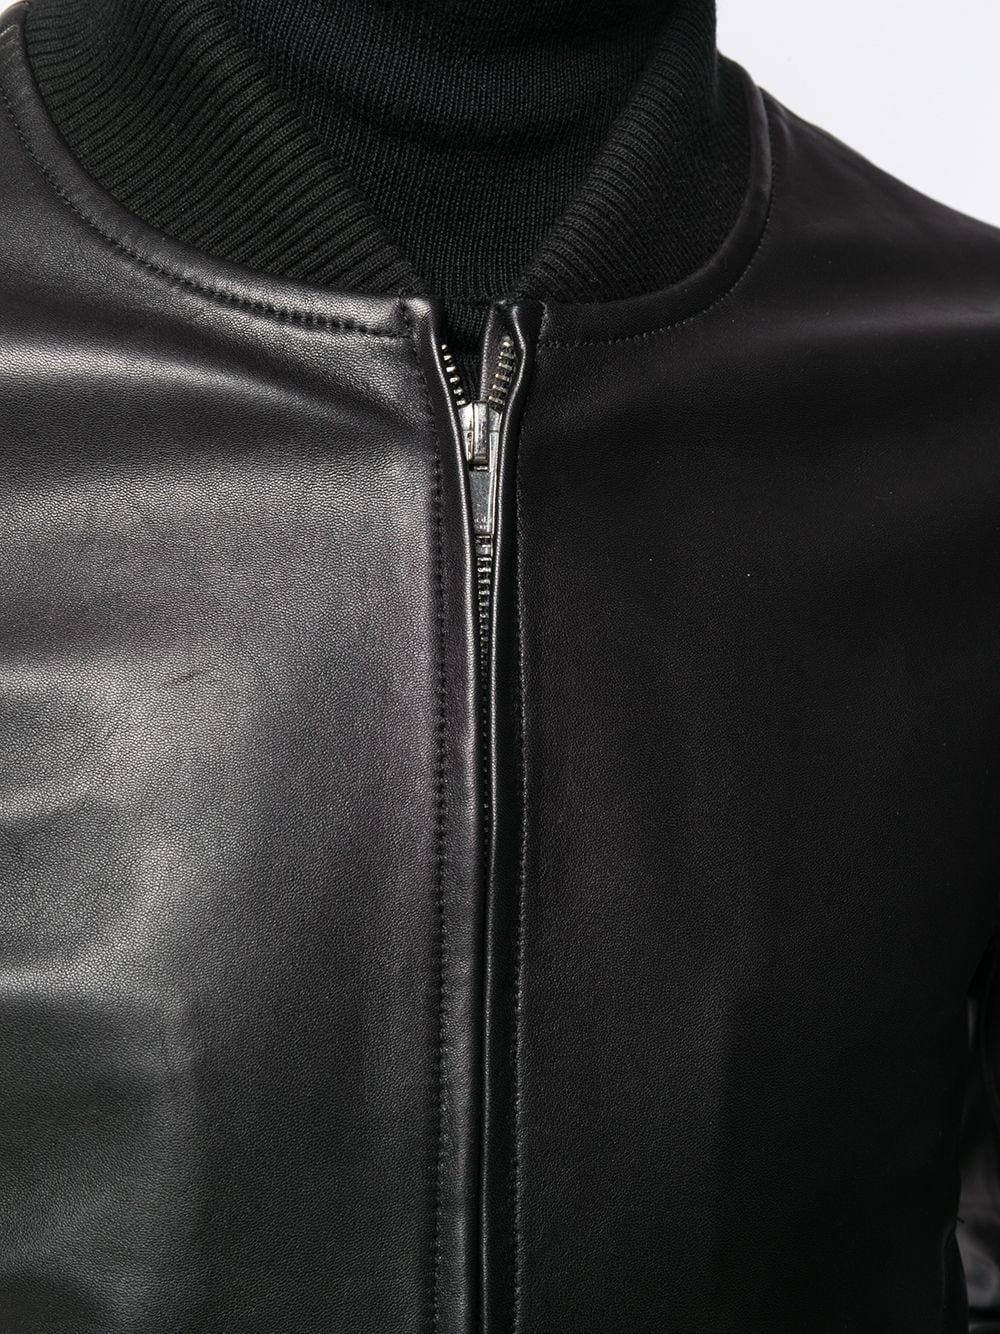 Sandro Leather Bomber Jacket in Black for Men